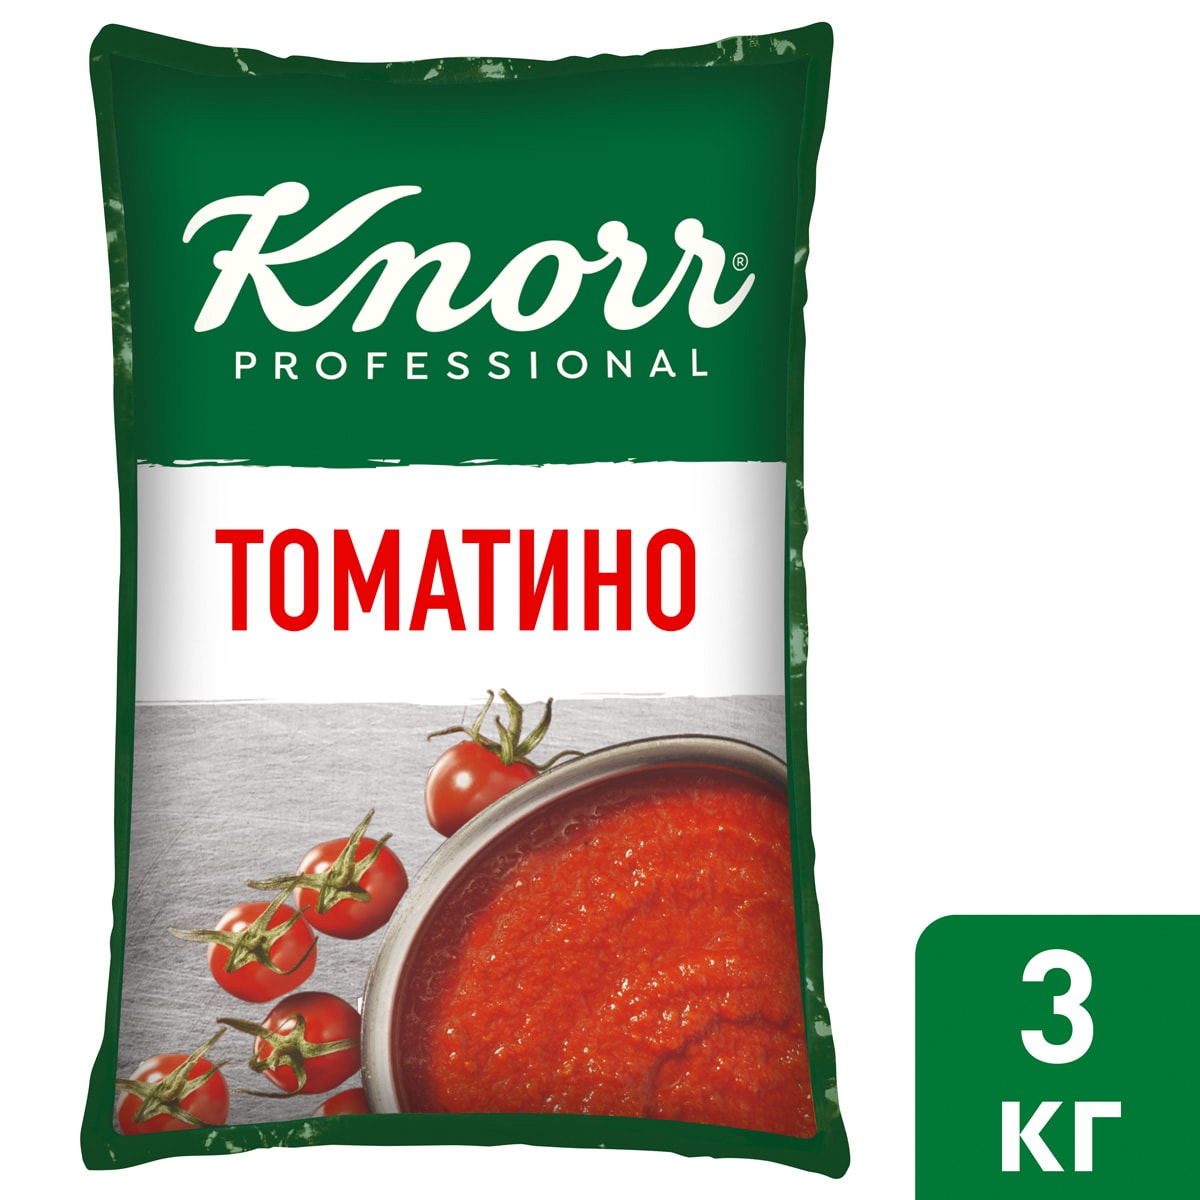 KNORR PROFESSIONAL Соус томатный Томатино (3 кг) - Knorr Professional Соус томатный Томатино - томатный соус с протертыми томатами.